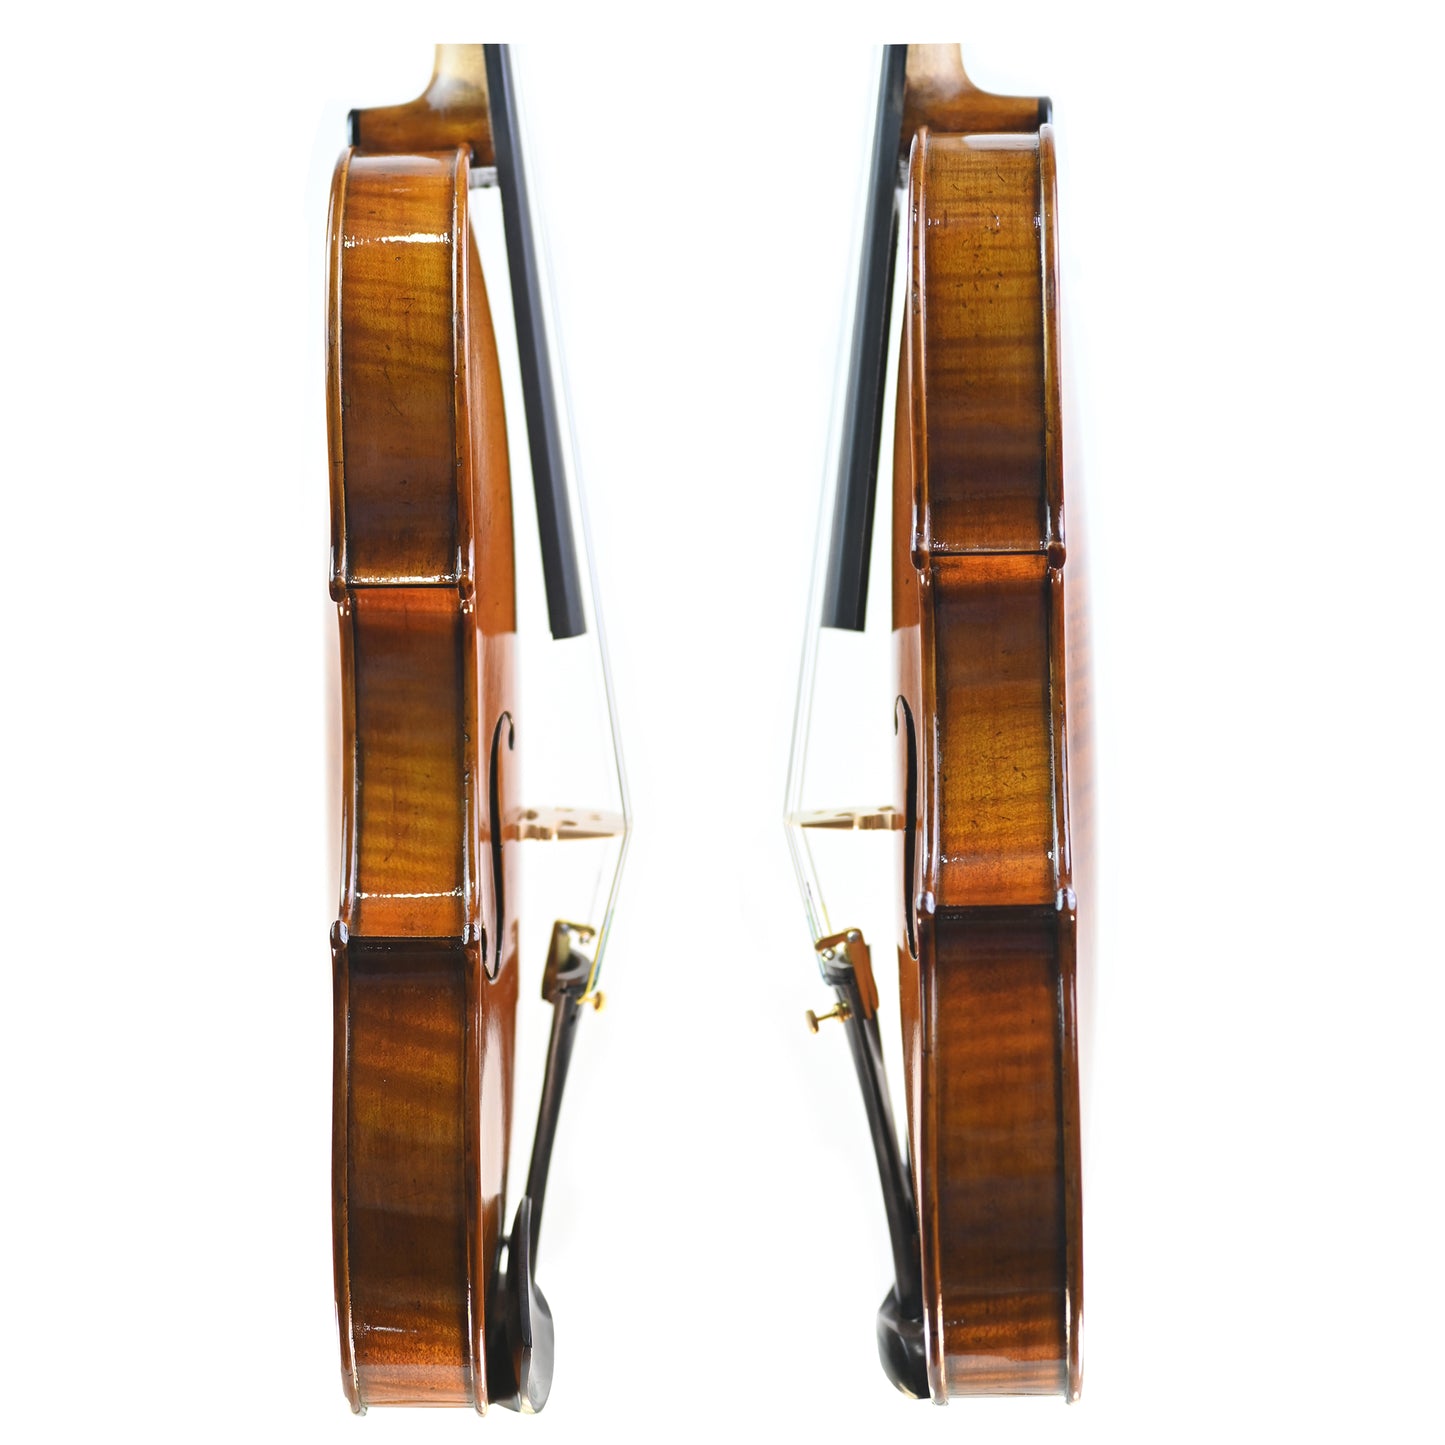 7007 full size beginner violin ribs